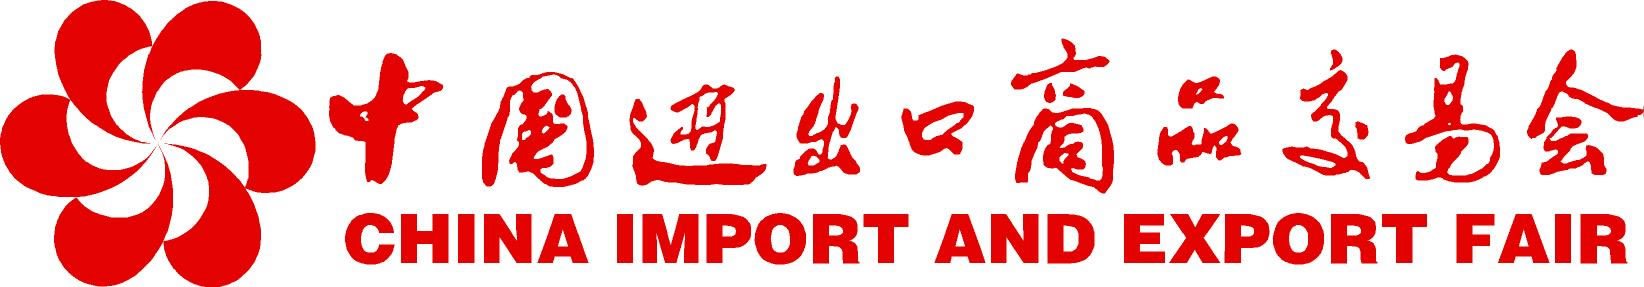 121e Chine importation et l'exportation équitable arrive bientôt